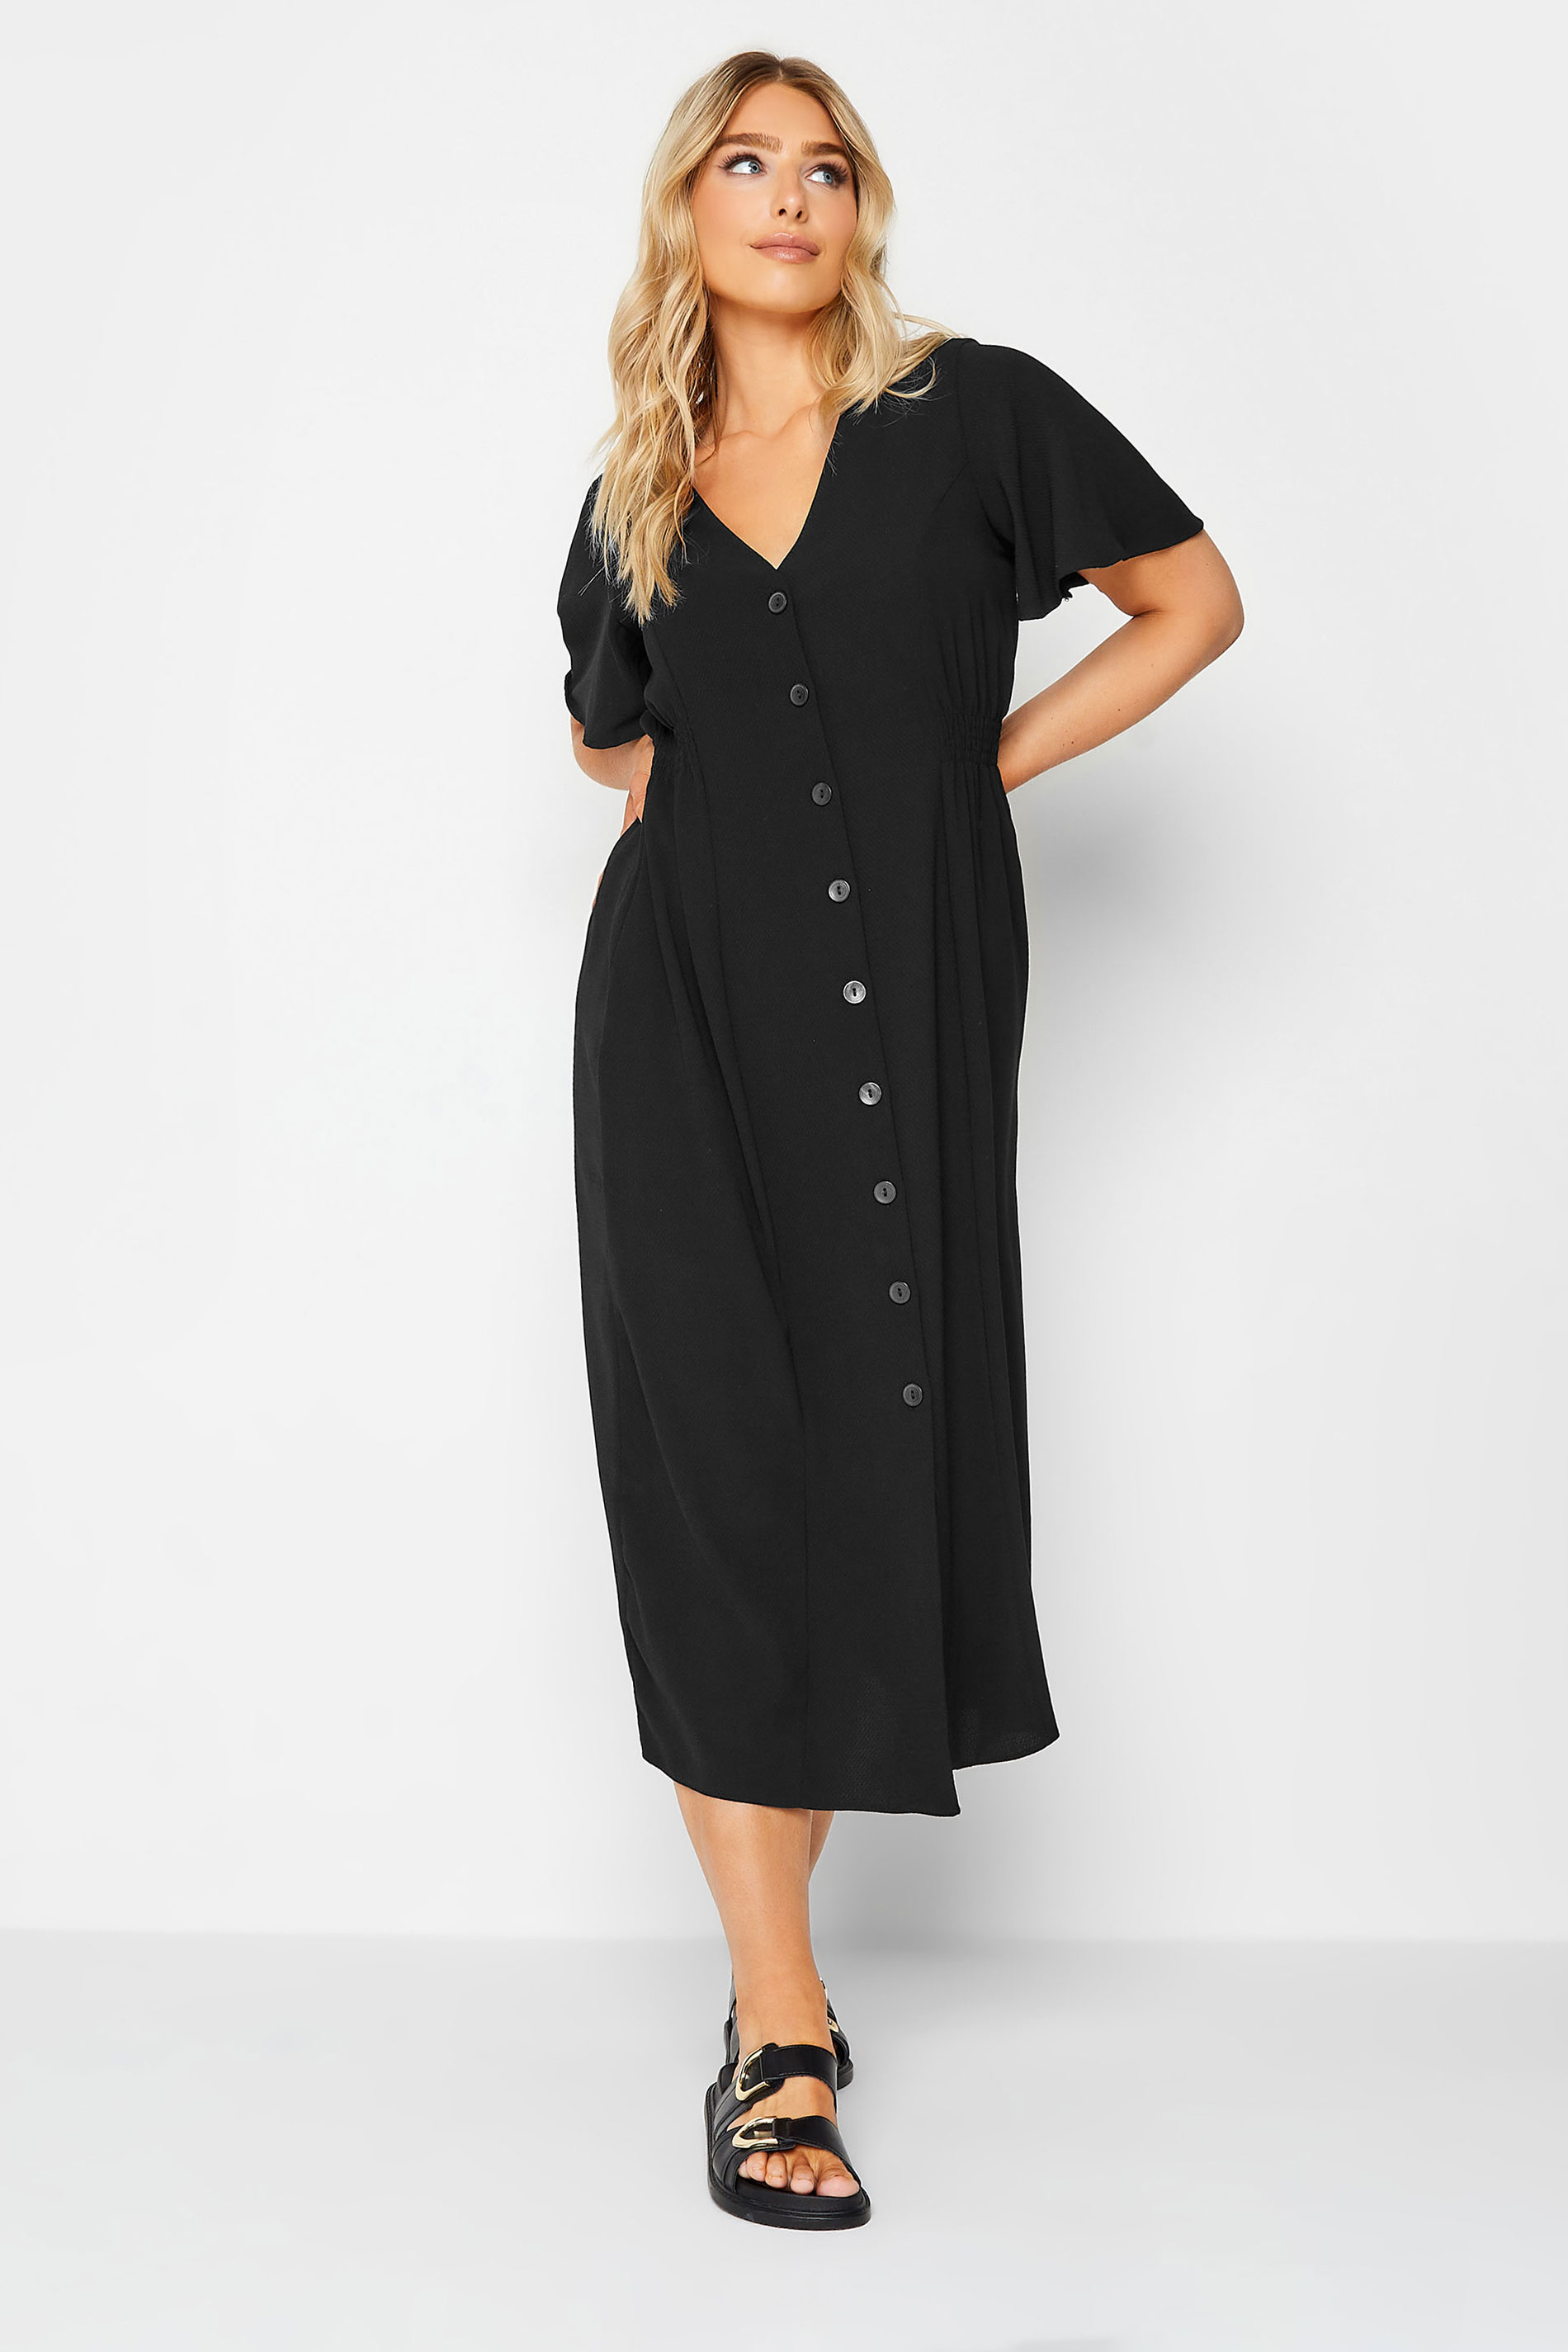 M&Co Black Shirred Waist Button Through Midi Dress | M&Co 2